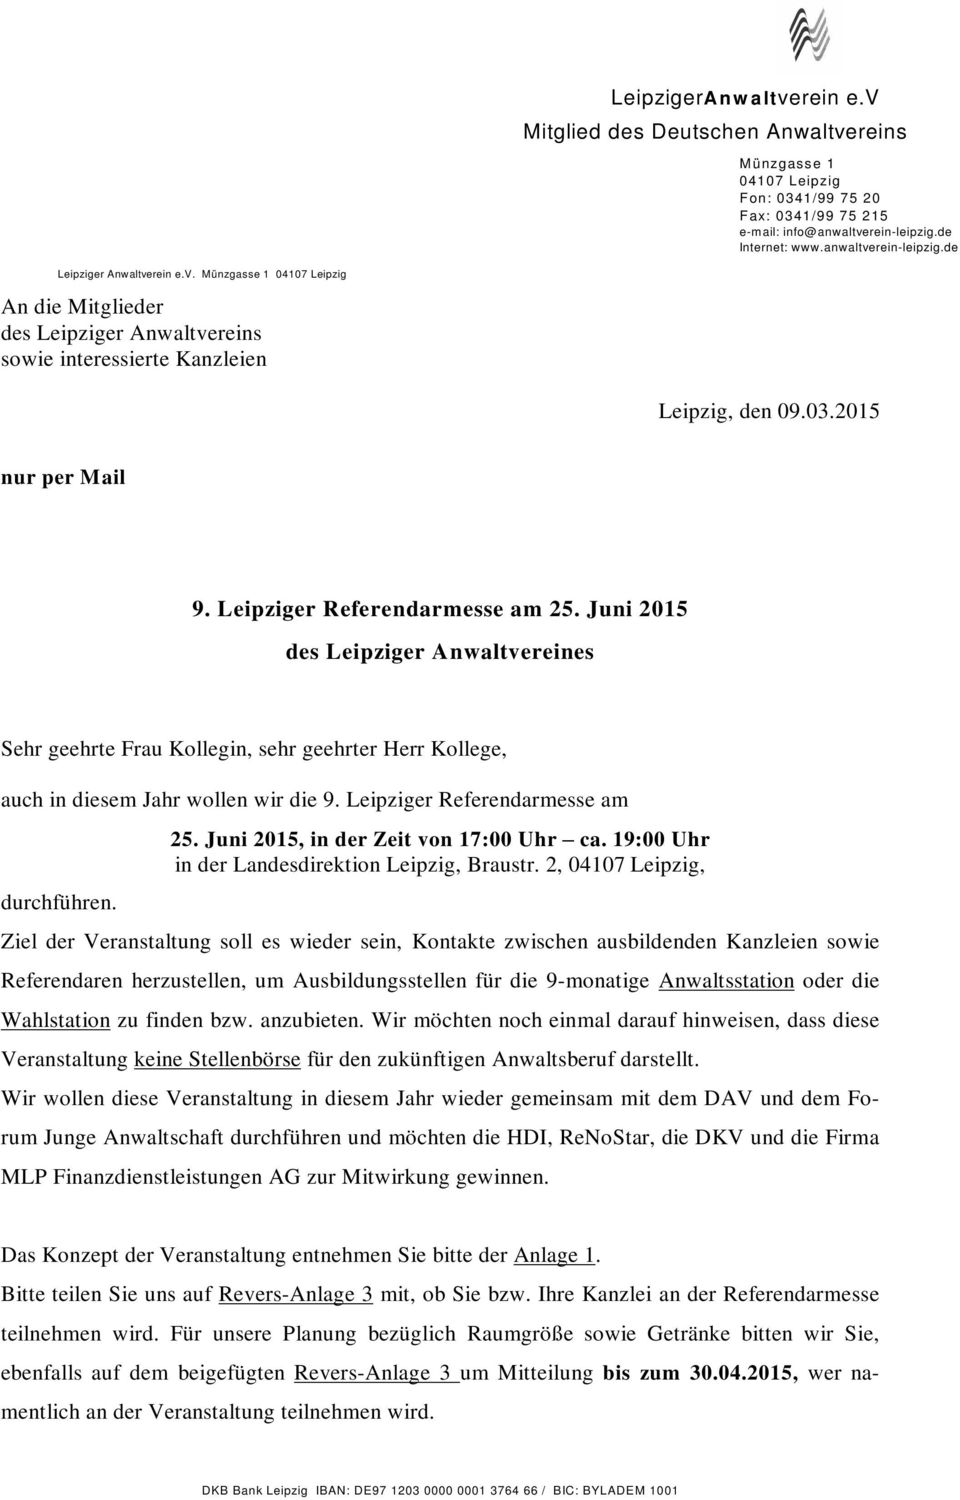 Juni 2015 des Leipziger Anwaltvereines Sehr geehrte Frau Kollegin, sehr geehrter Herr Kollege, auch in diesem Jahr wollen wir die 9. Leipziger Referendarmesse am durchführen. 25.